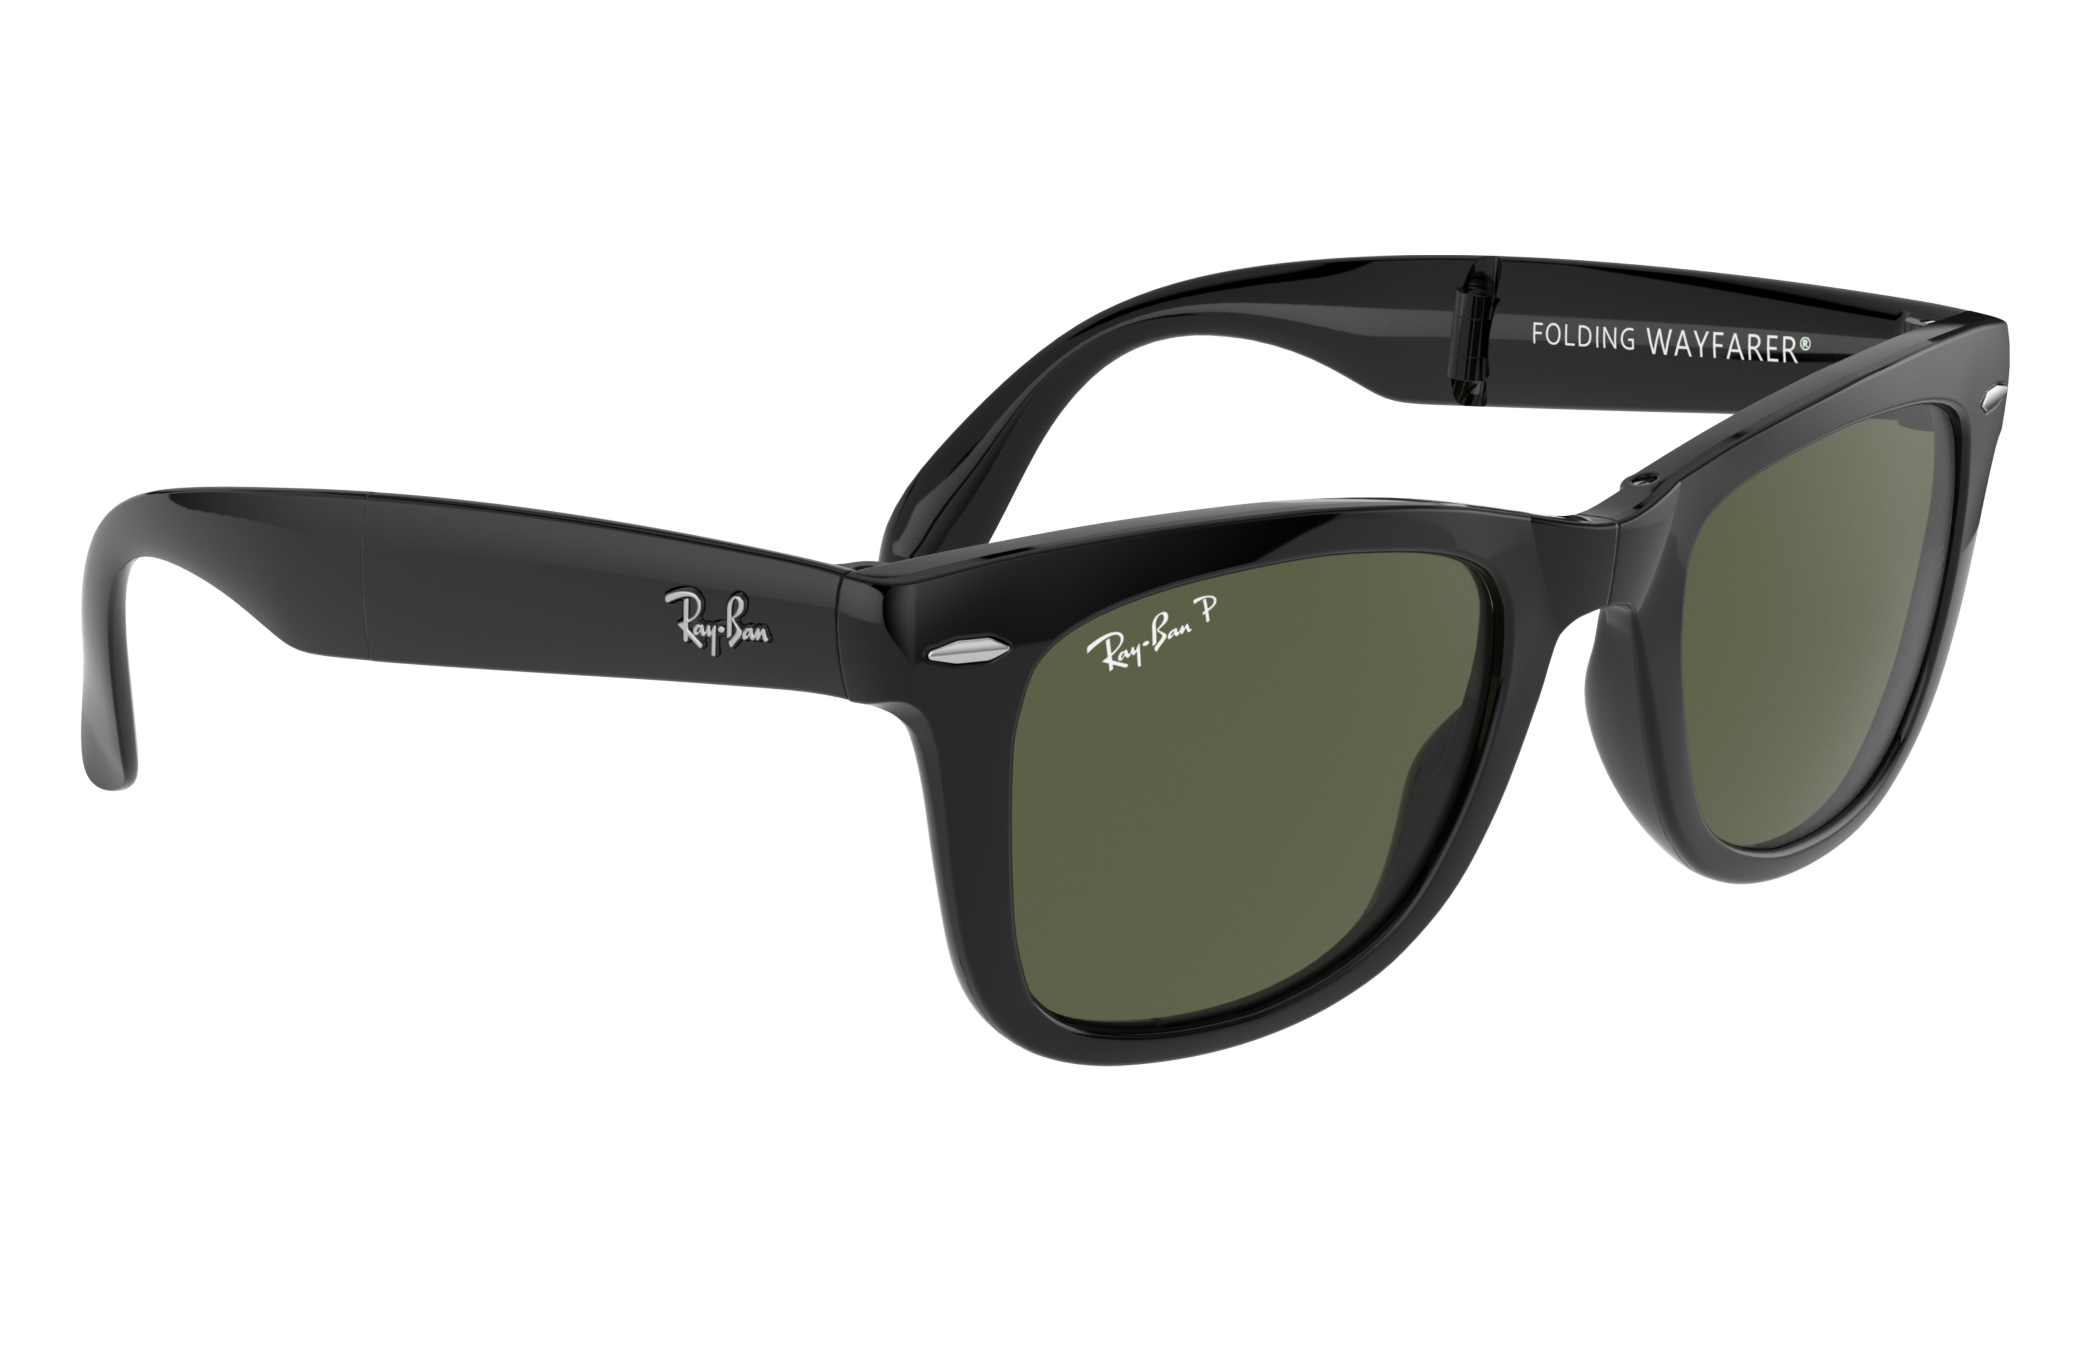 ray ban 0rb4165 wayfarer sunglasses